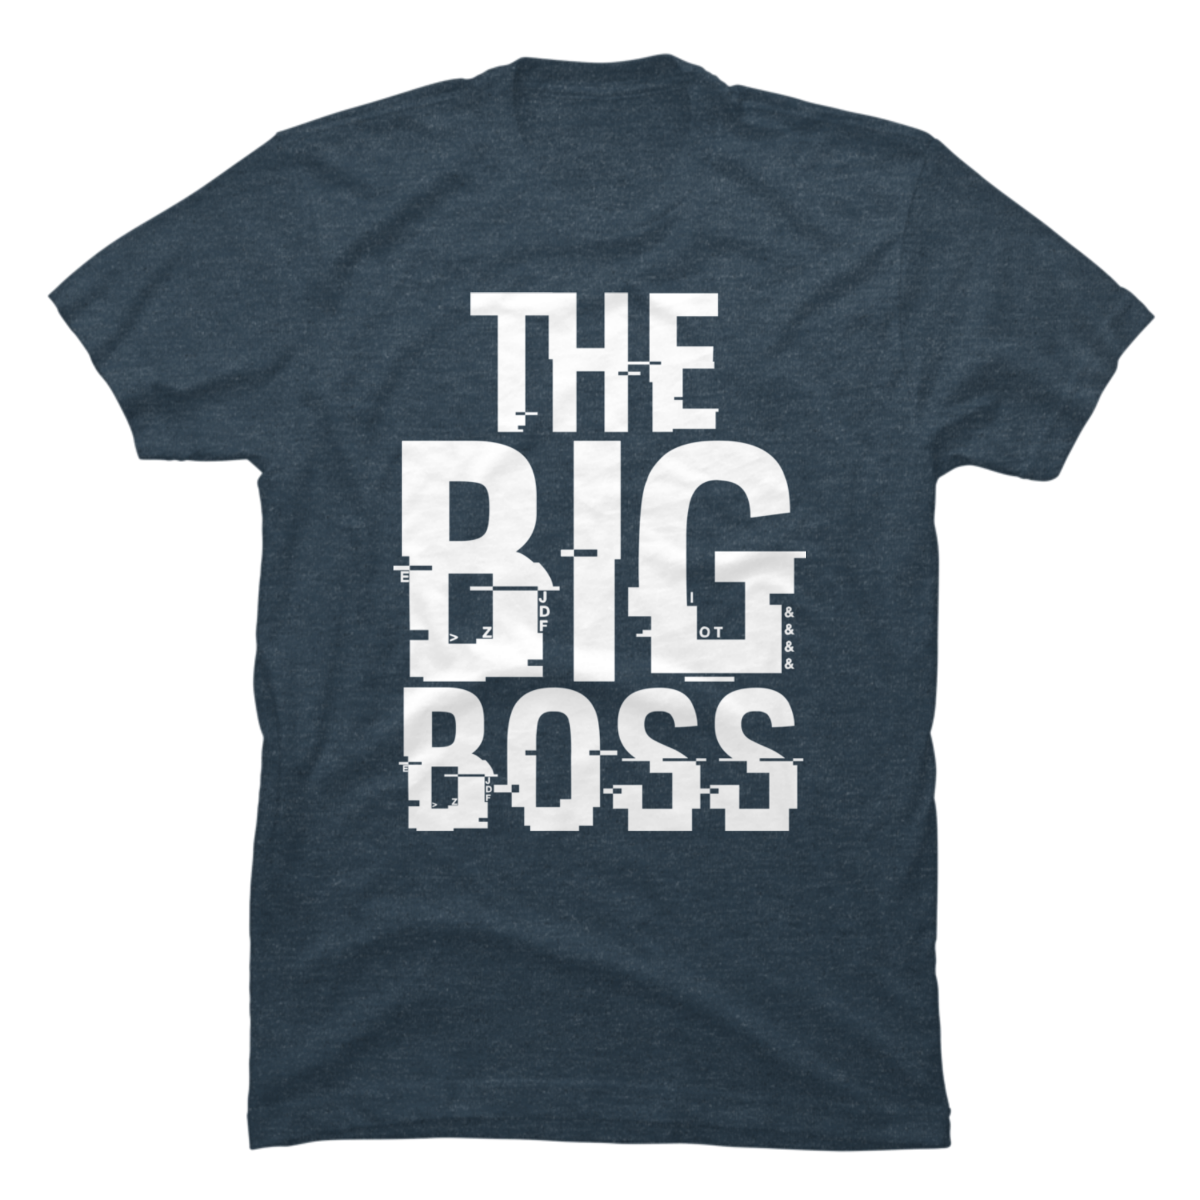 big boss shirts